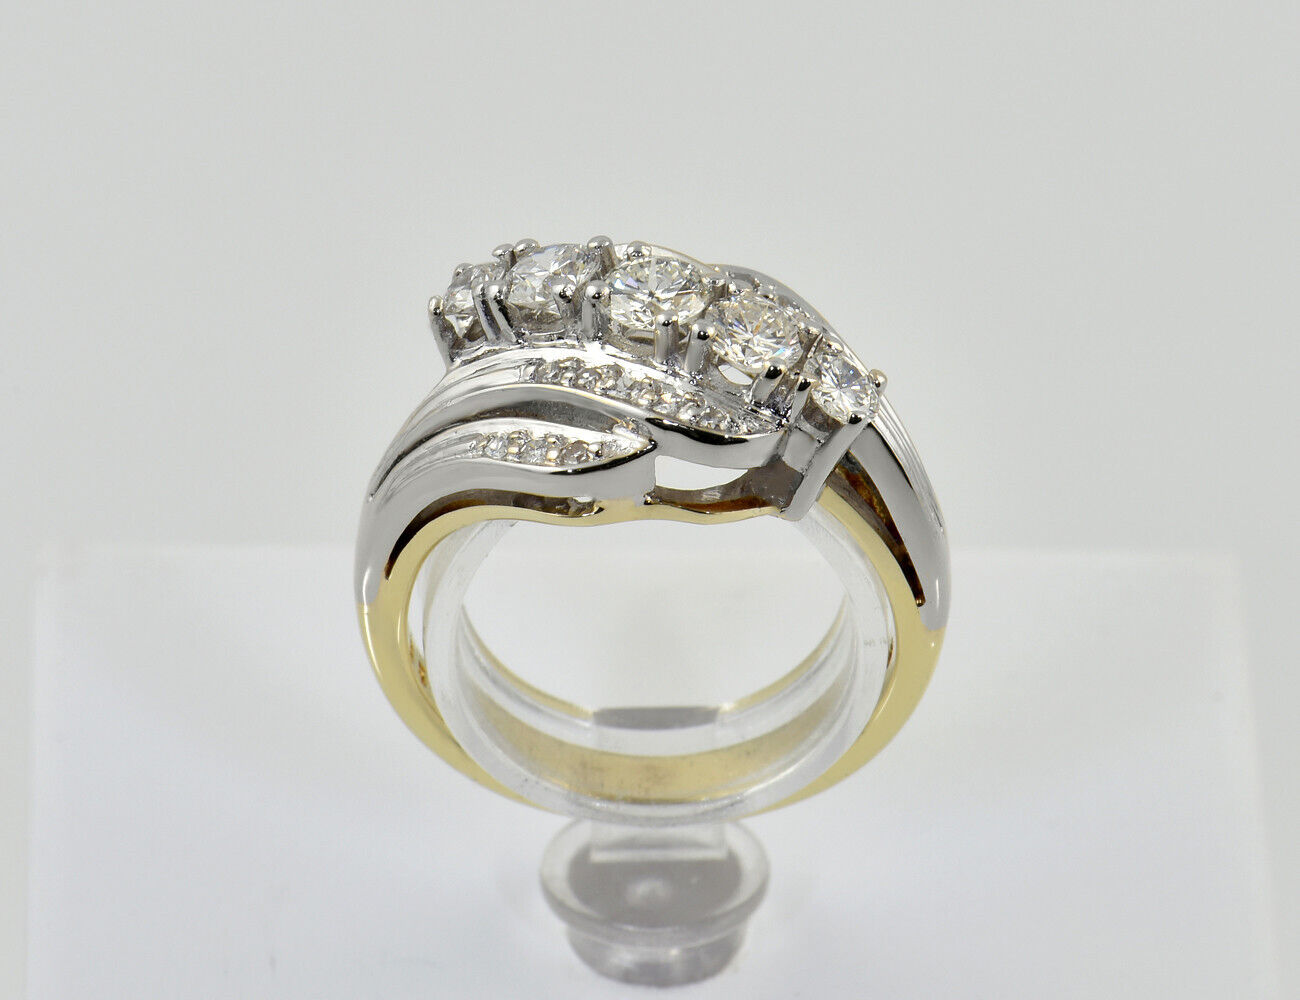 Diamant Ring 585/000 14 K Gelbgold 21 Diamanten zus. 0,85 ct